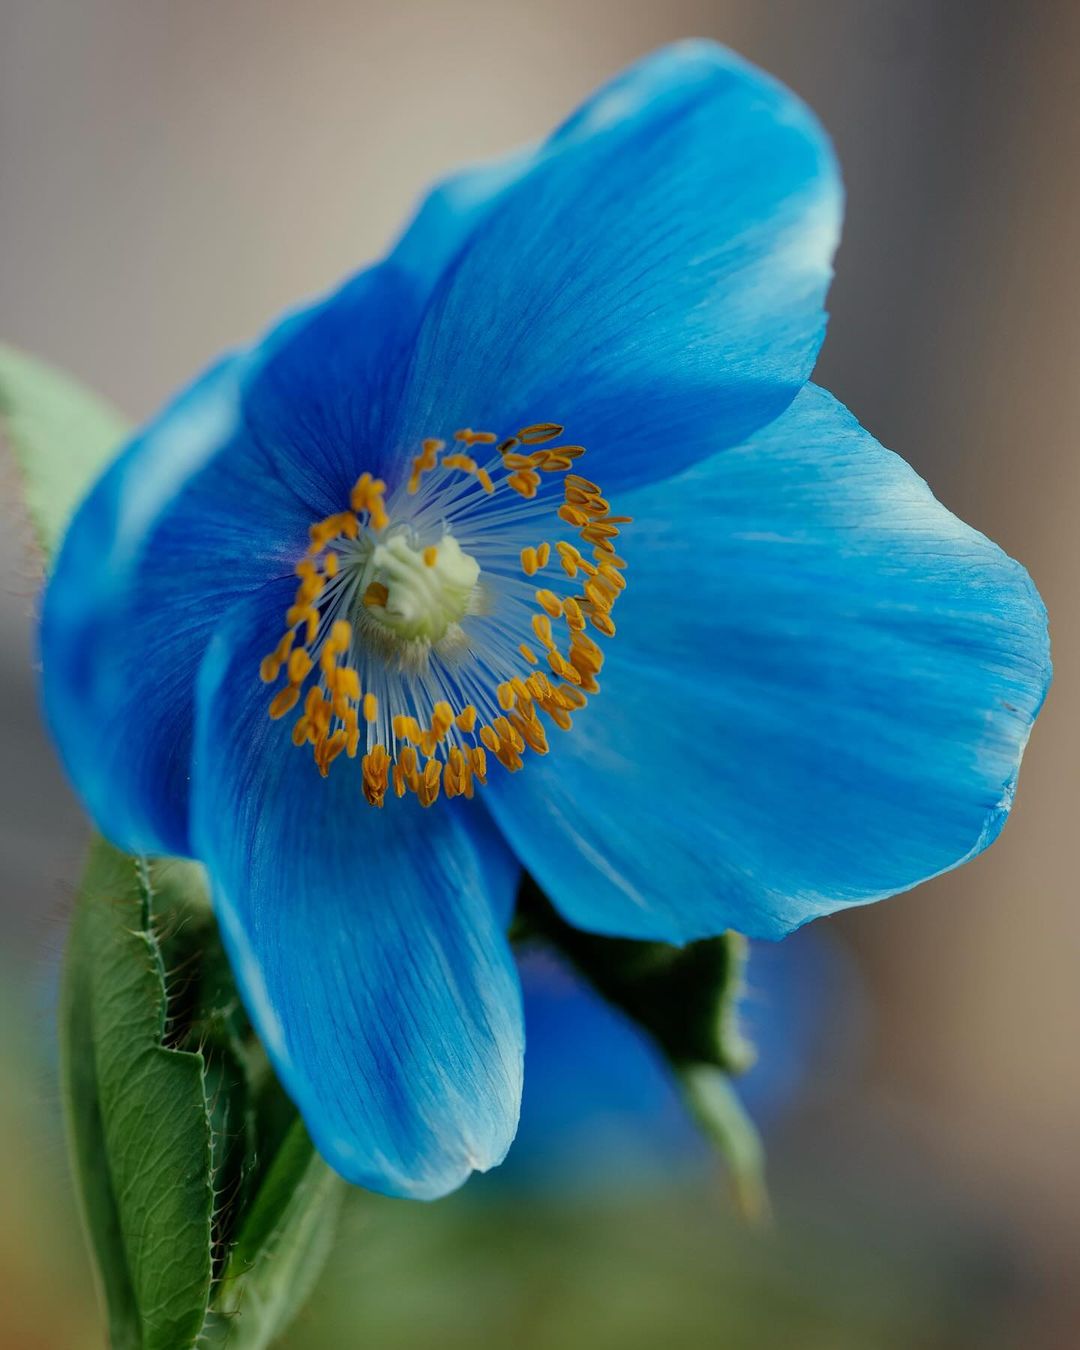 Blue Himalayan Blue Poppy flower photograph - fine art print of a stunning blue flower.